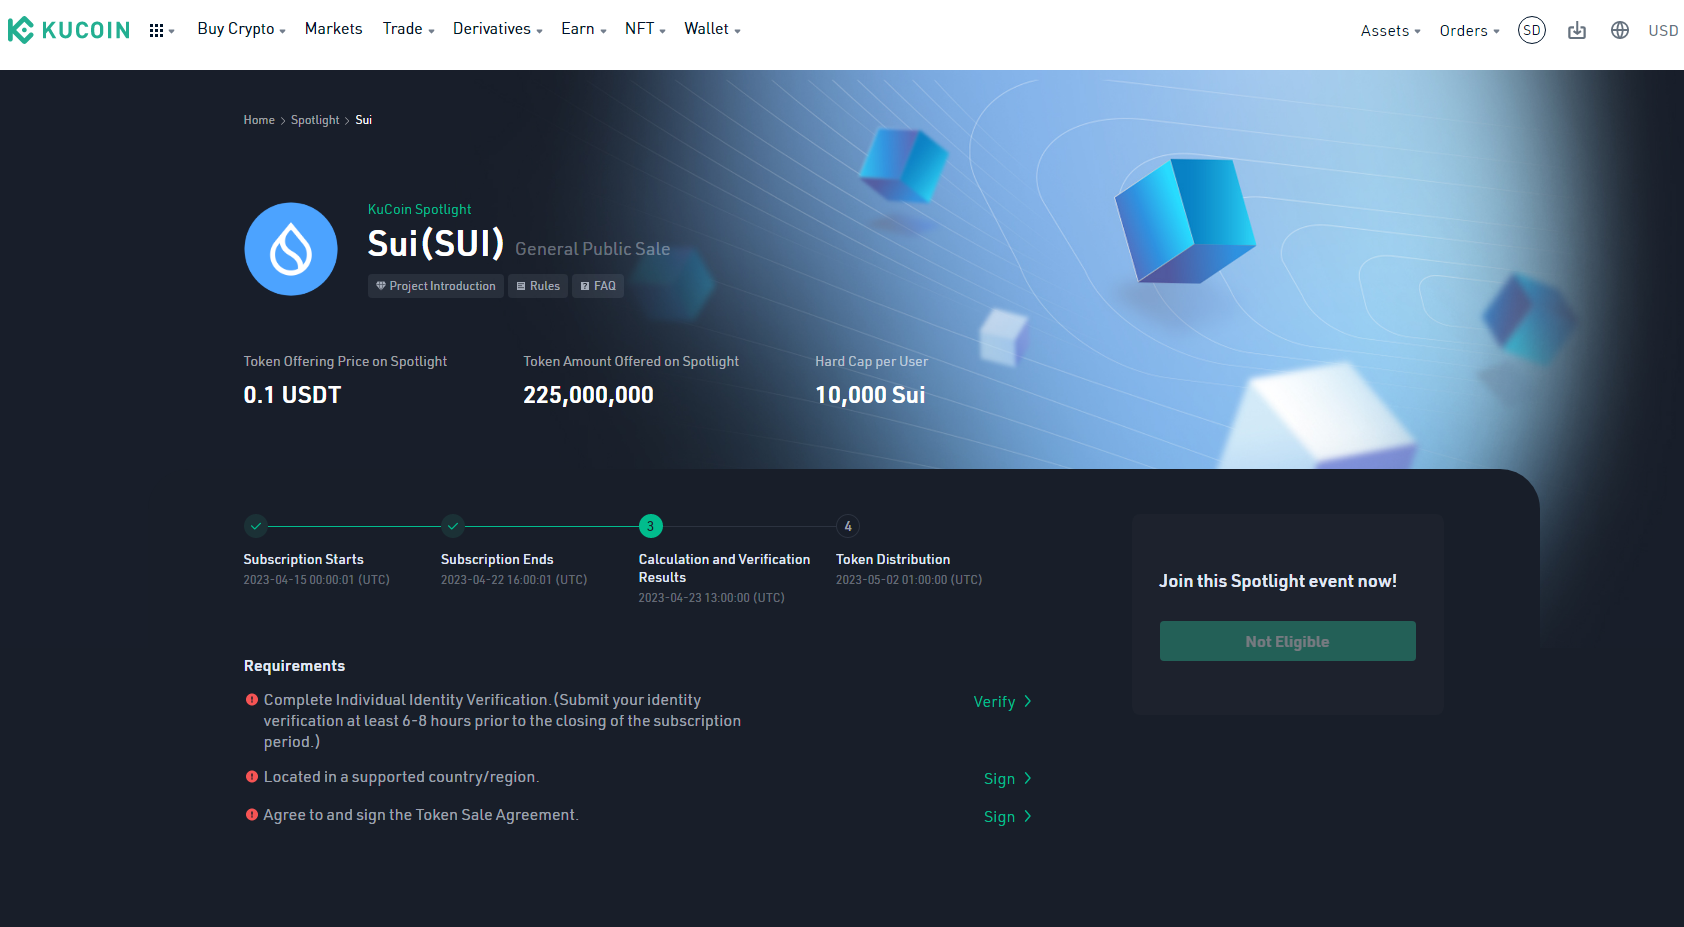 SUI token launch on KuCoin Spotlight